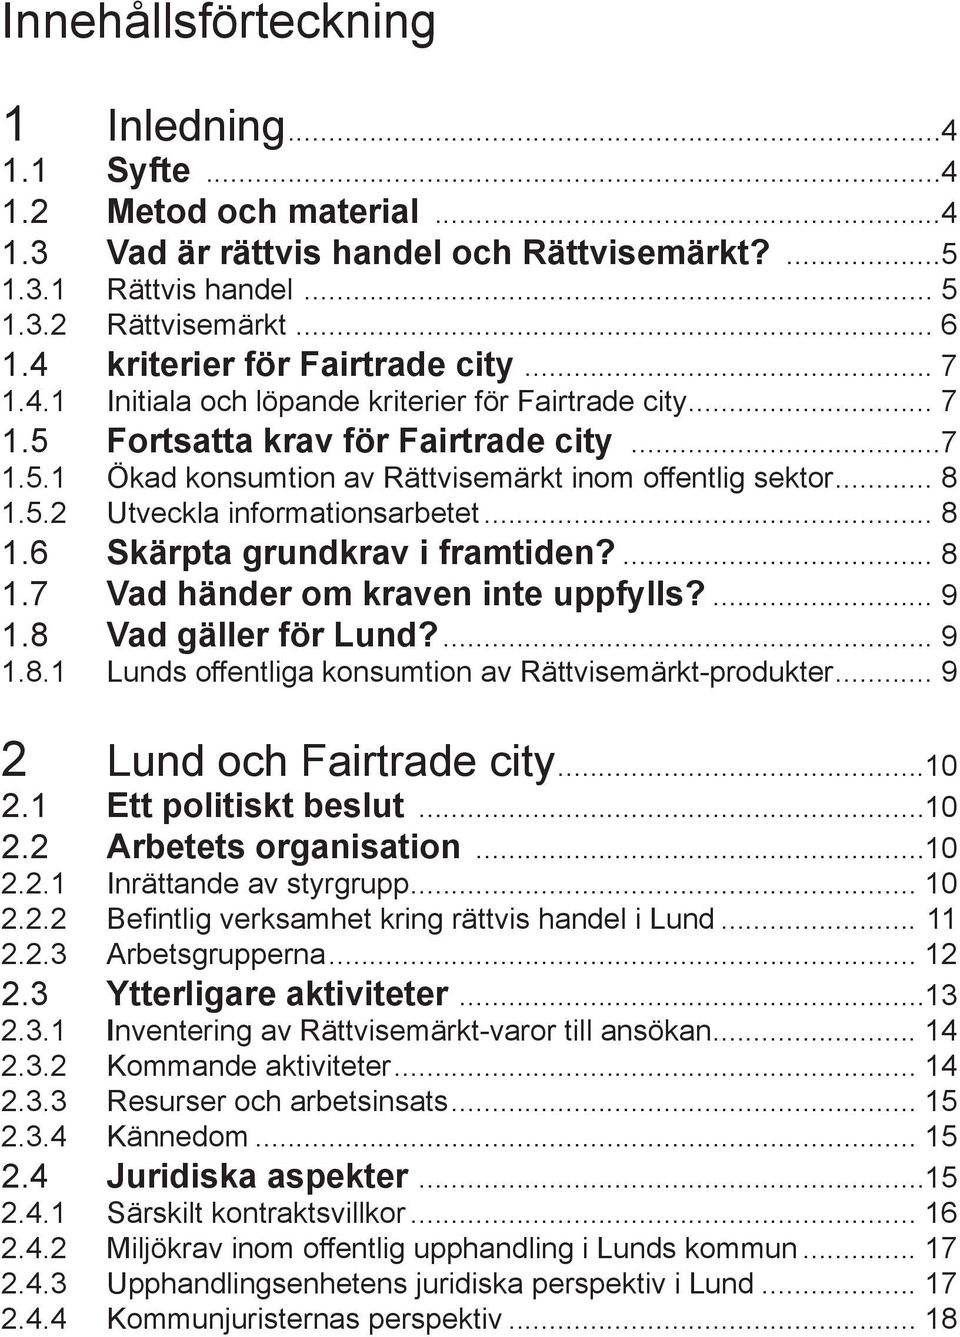 .. 8 1.5.2 Utveckla informationsarbetet... 8 1.6 Skärpta grundkrav i framtiden?... 8 1.7 Vad händer om kraven inte uppfylls?... 9 1.8 Vad gäller för Lund?... 9 1.8.1 Lunds offentliga konsumtion av Rättvisemärkt-produkter.